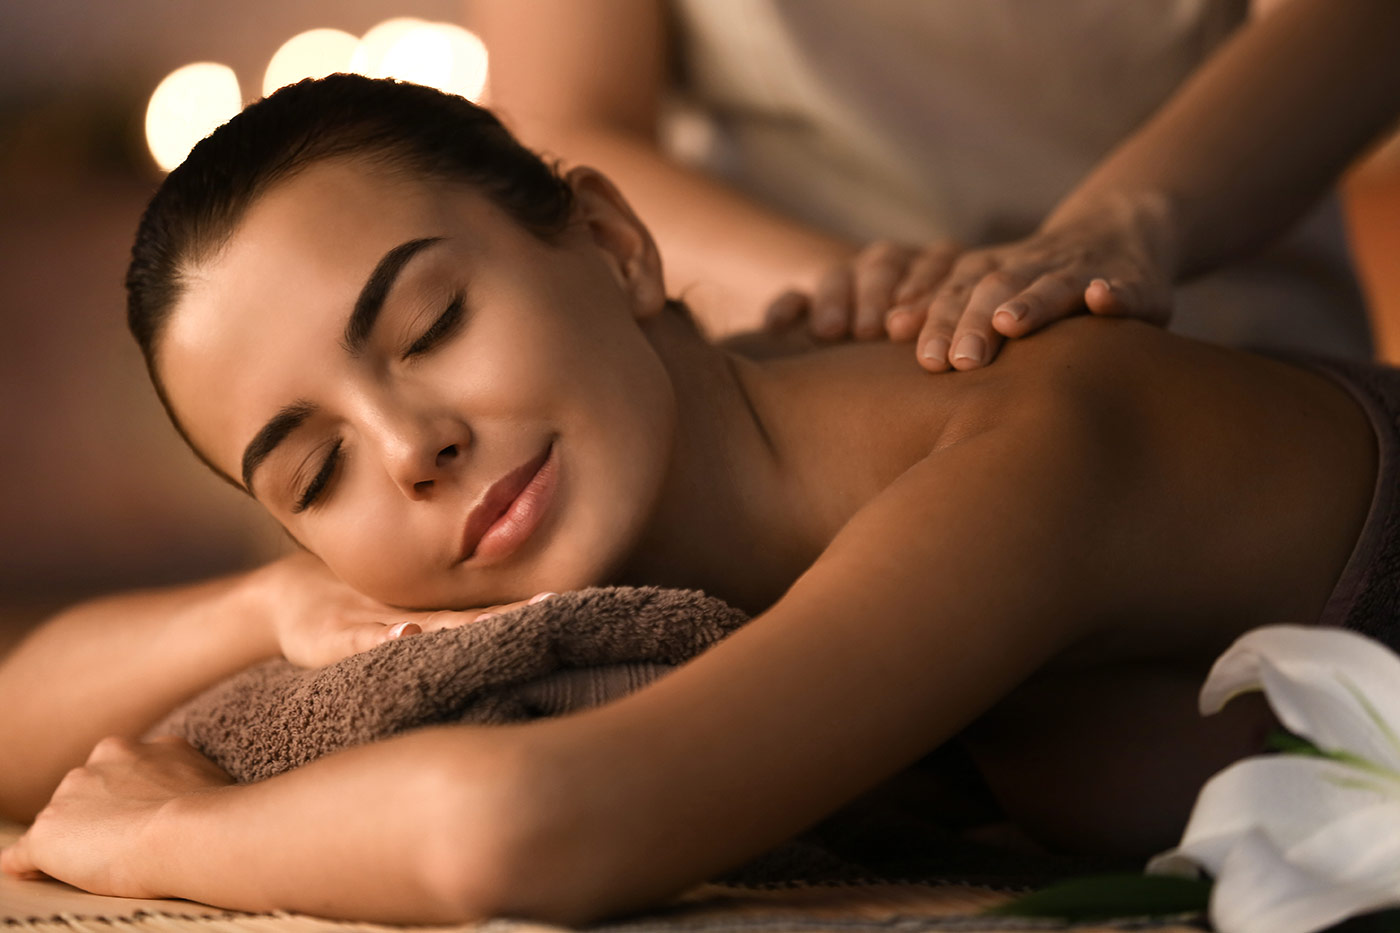 Schwedische Massage: Ablauf, Wirkung und Anwendung – erholsame Massage